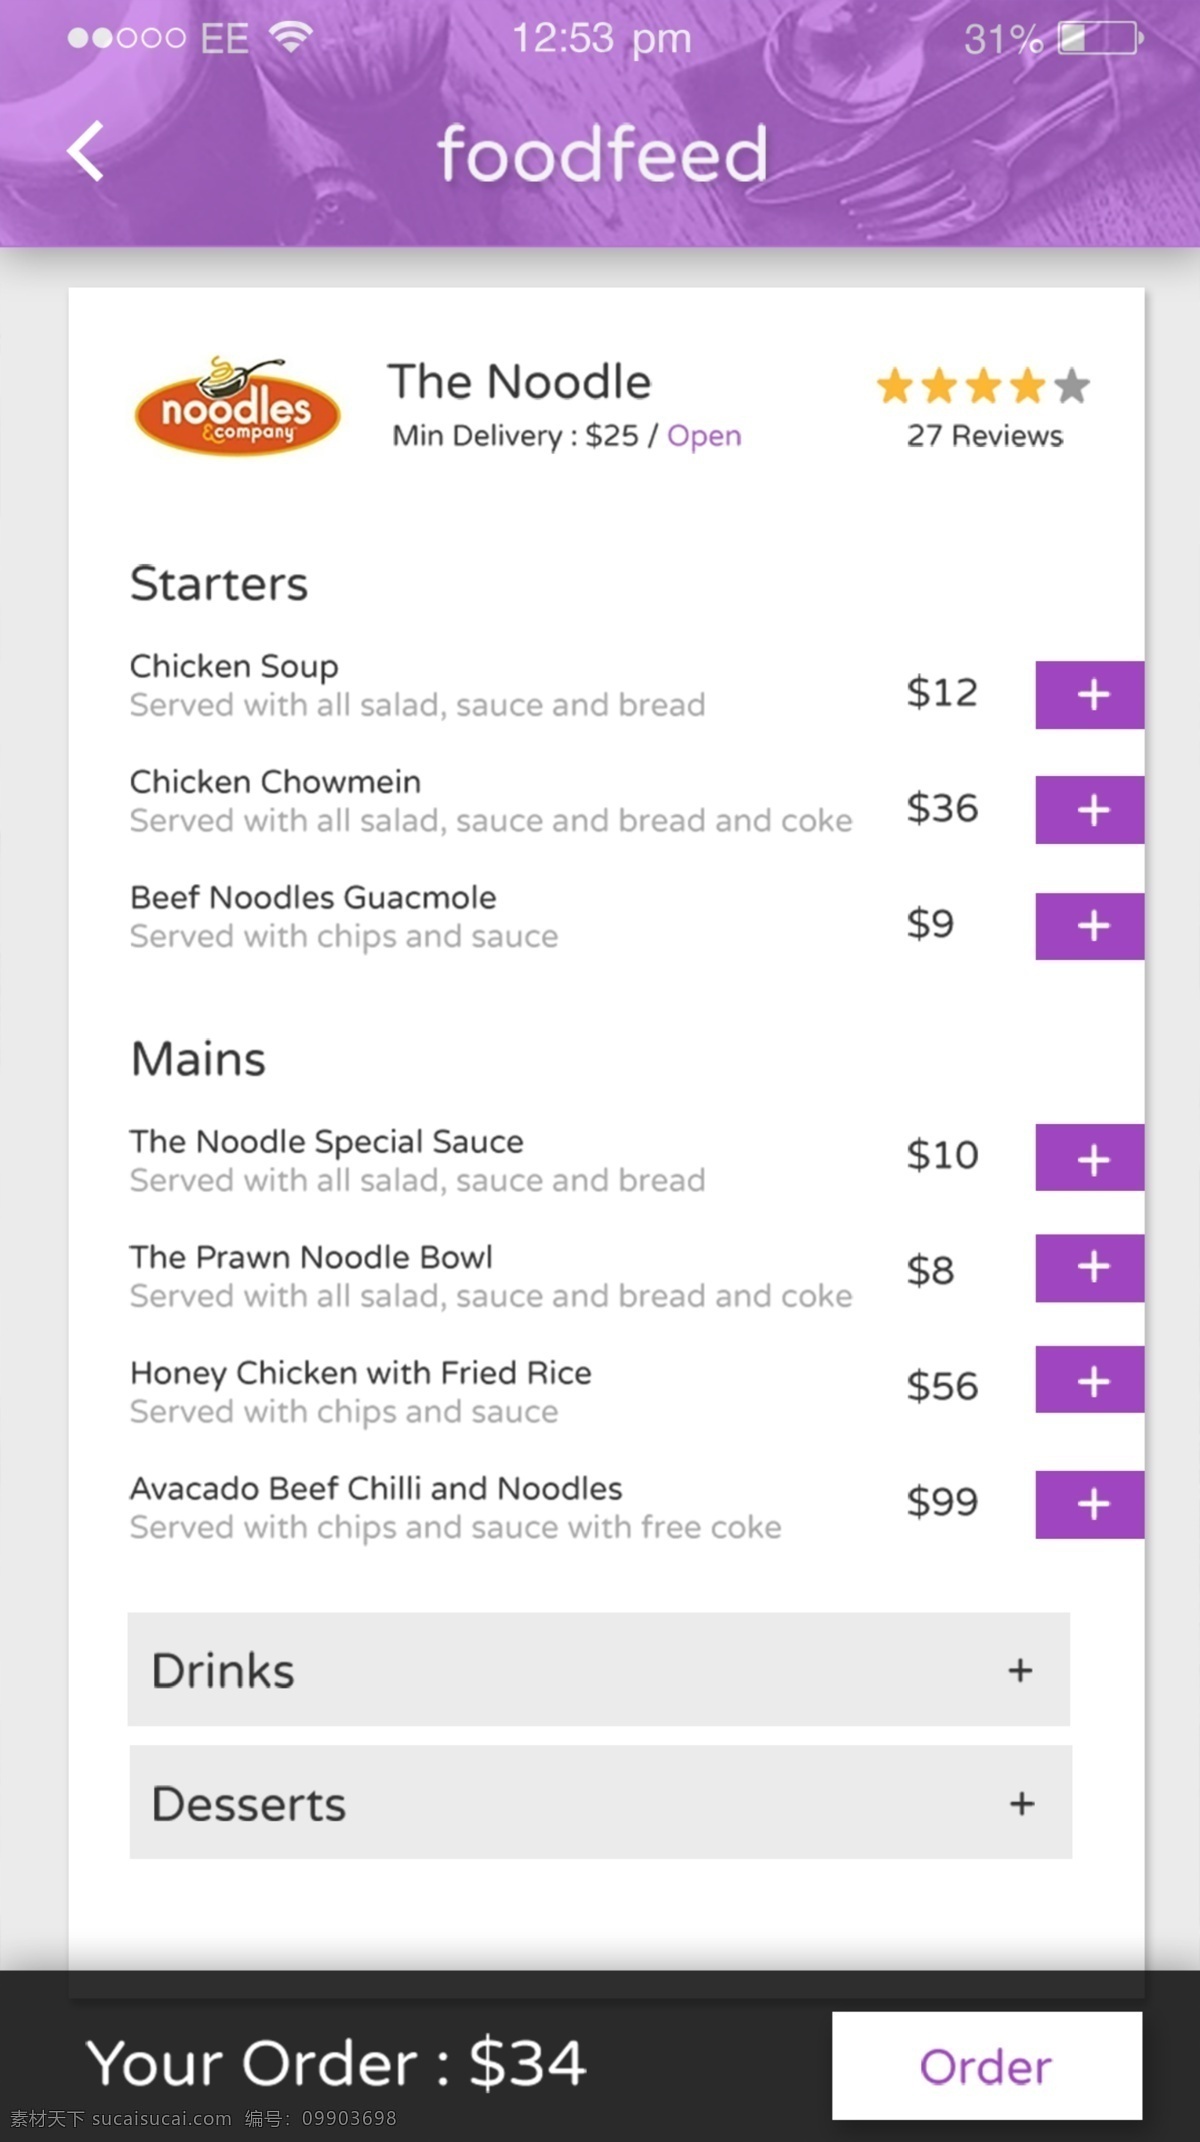 紫色 菜单 订单 界面 设计素材 手机app app设计 app界面 app app素材 商城app 界面设计 商城界面 微信商城设计 微信商城 订单结算 订单界面